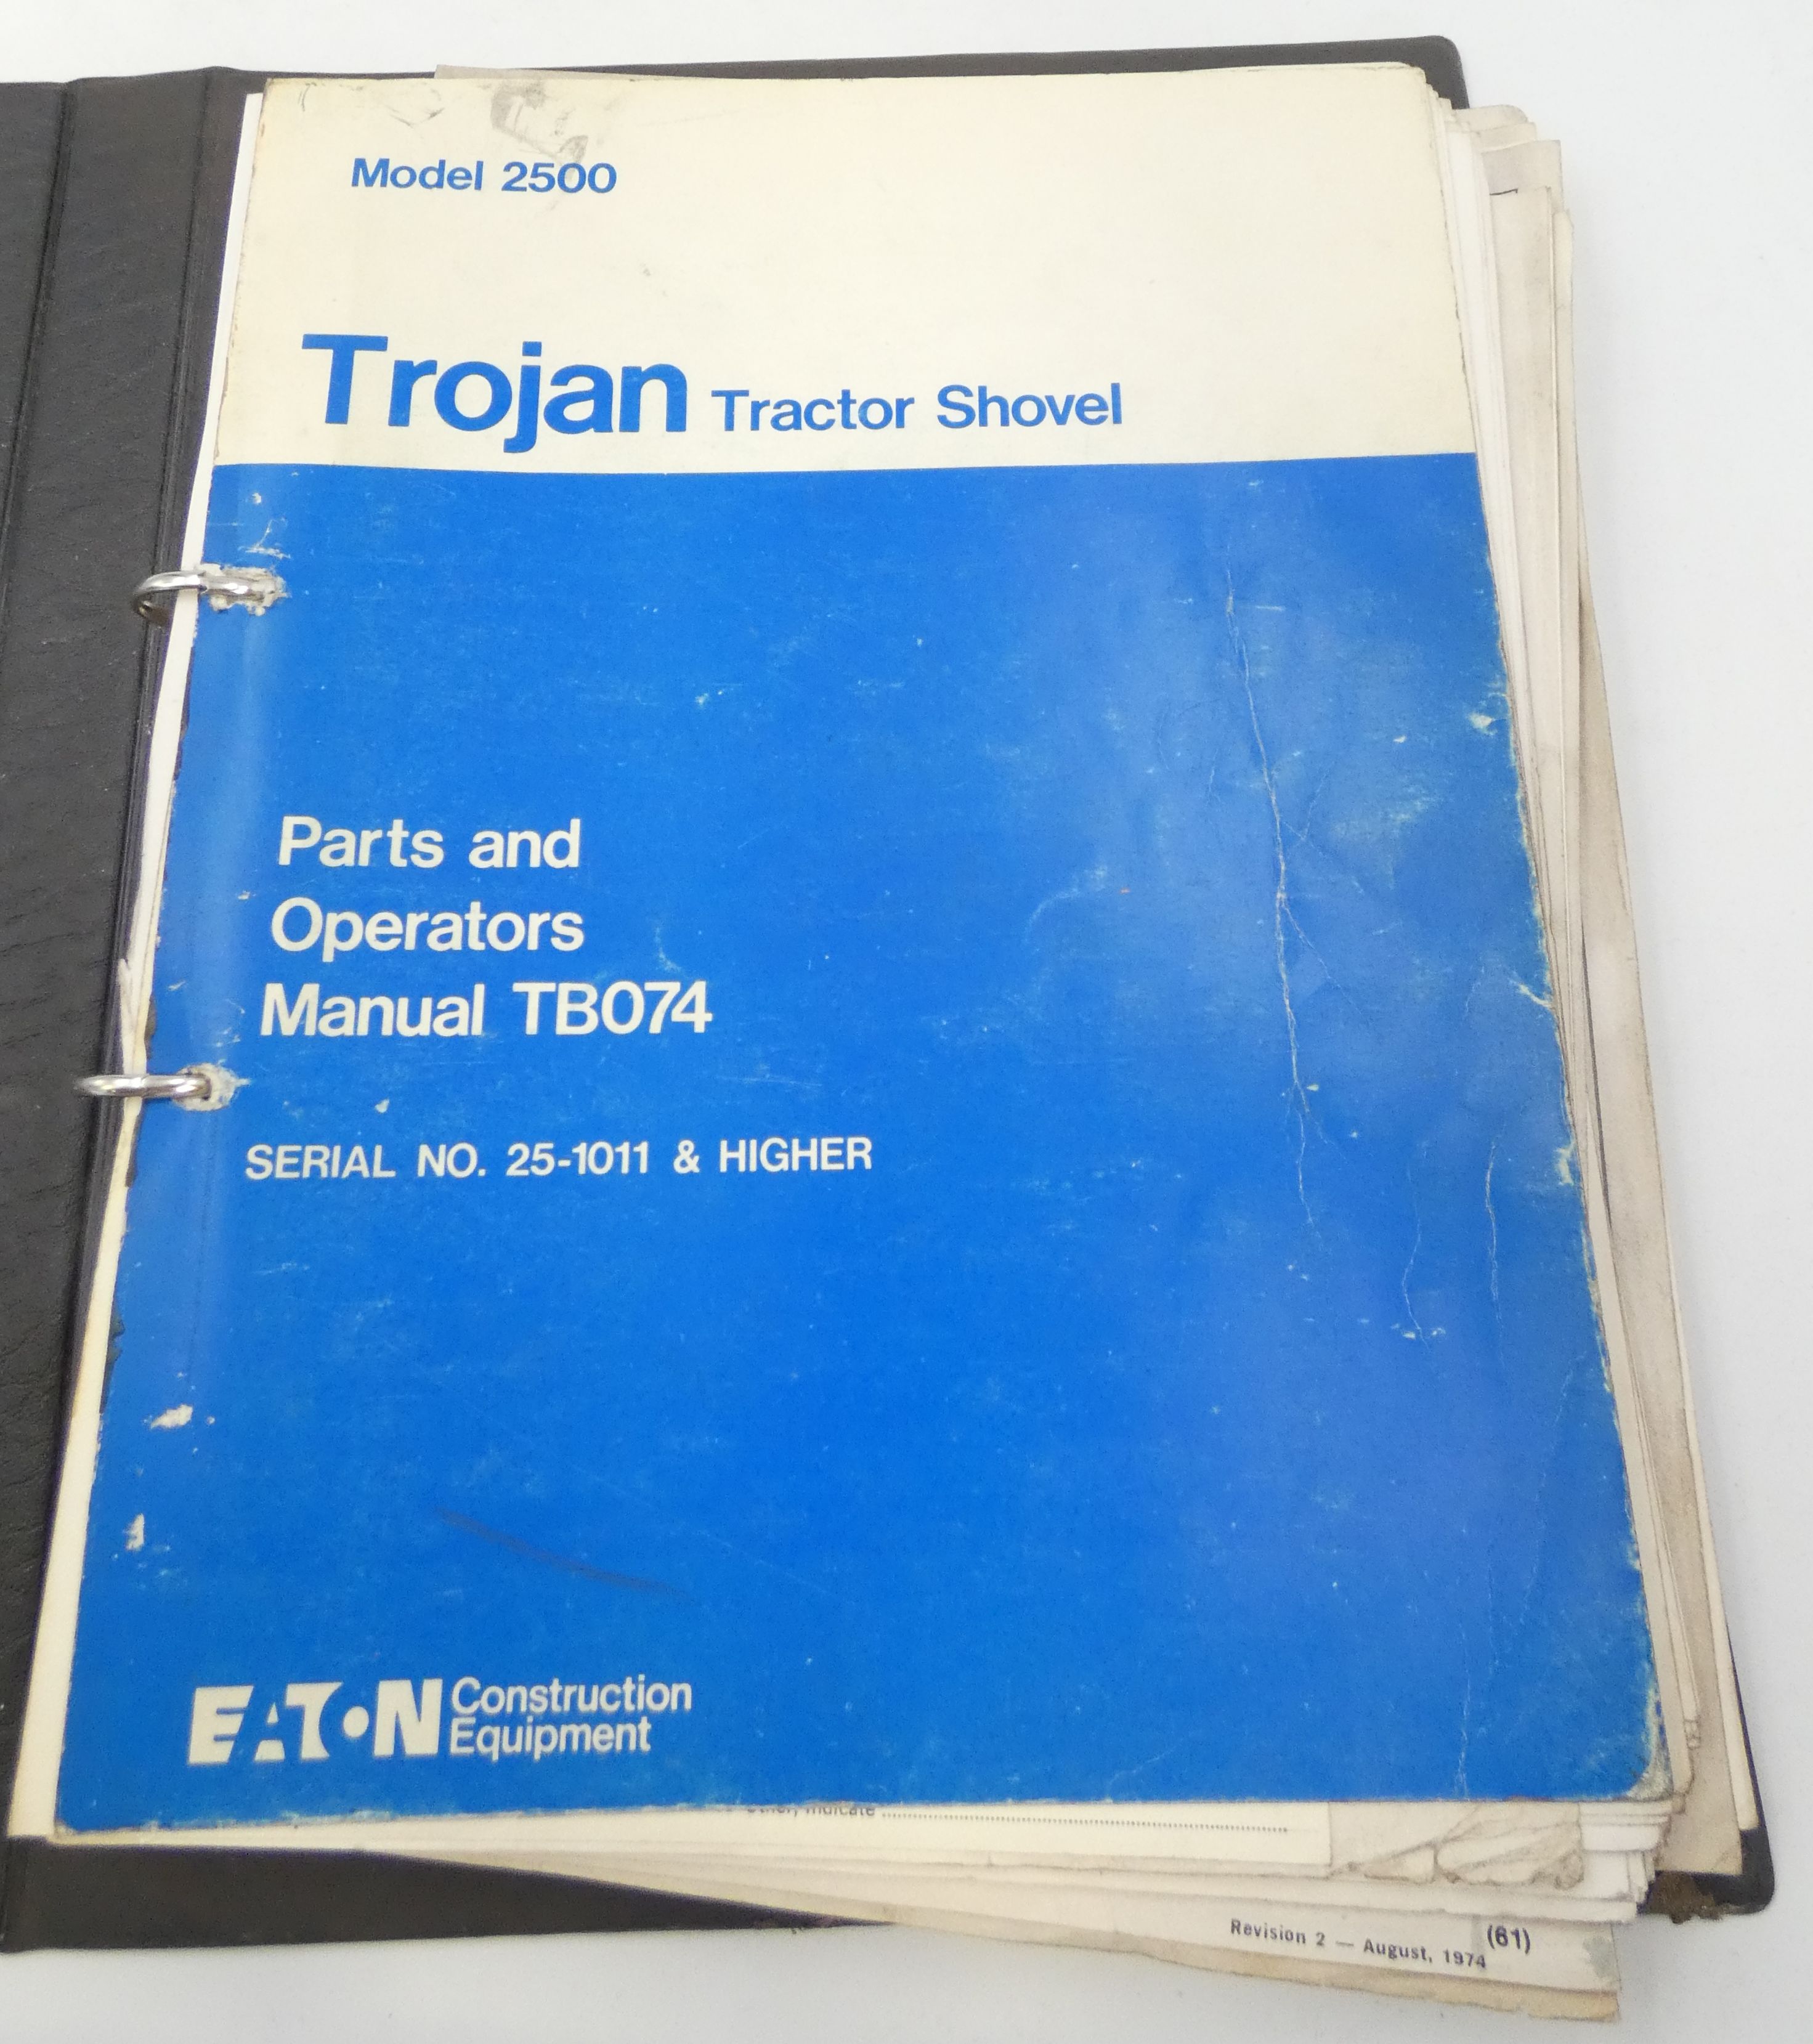 Trojan tractor shovel model 2500 parts and operators manual TB074